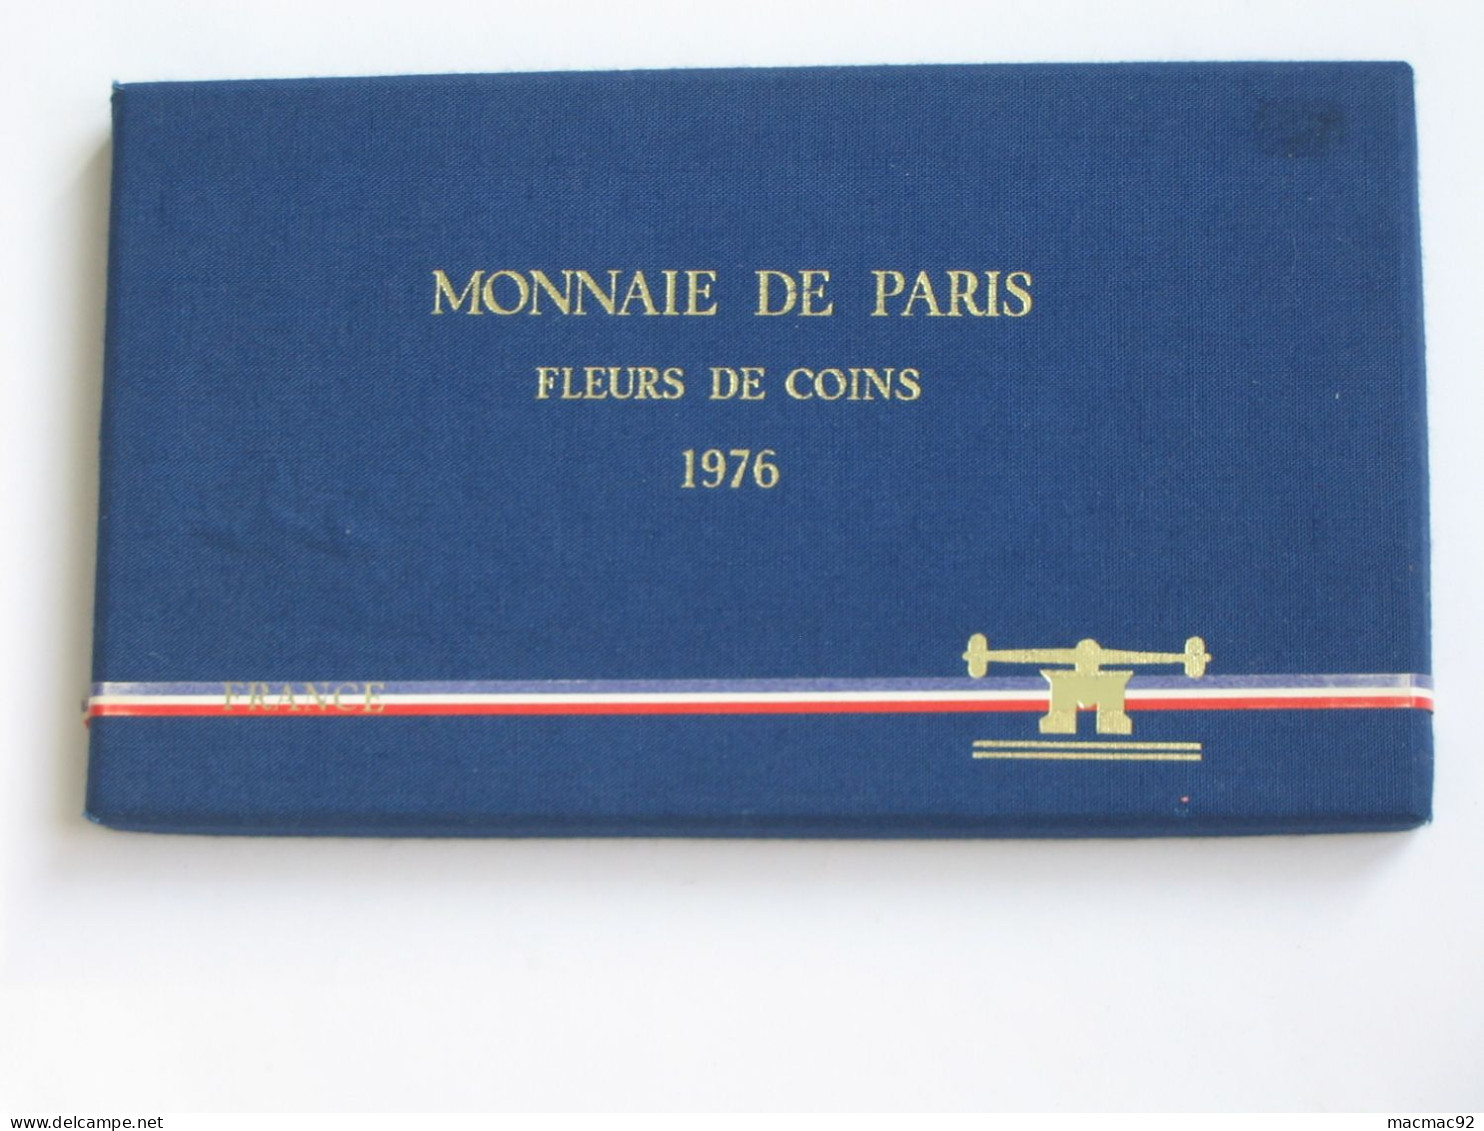 Coffret Série FLEURS DE COINS 1976   **** EN ACHAT IMMEDIAT   **** - BU, Proofs & Presentation Cases